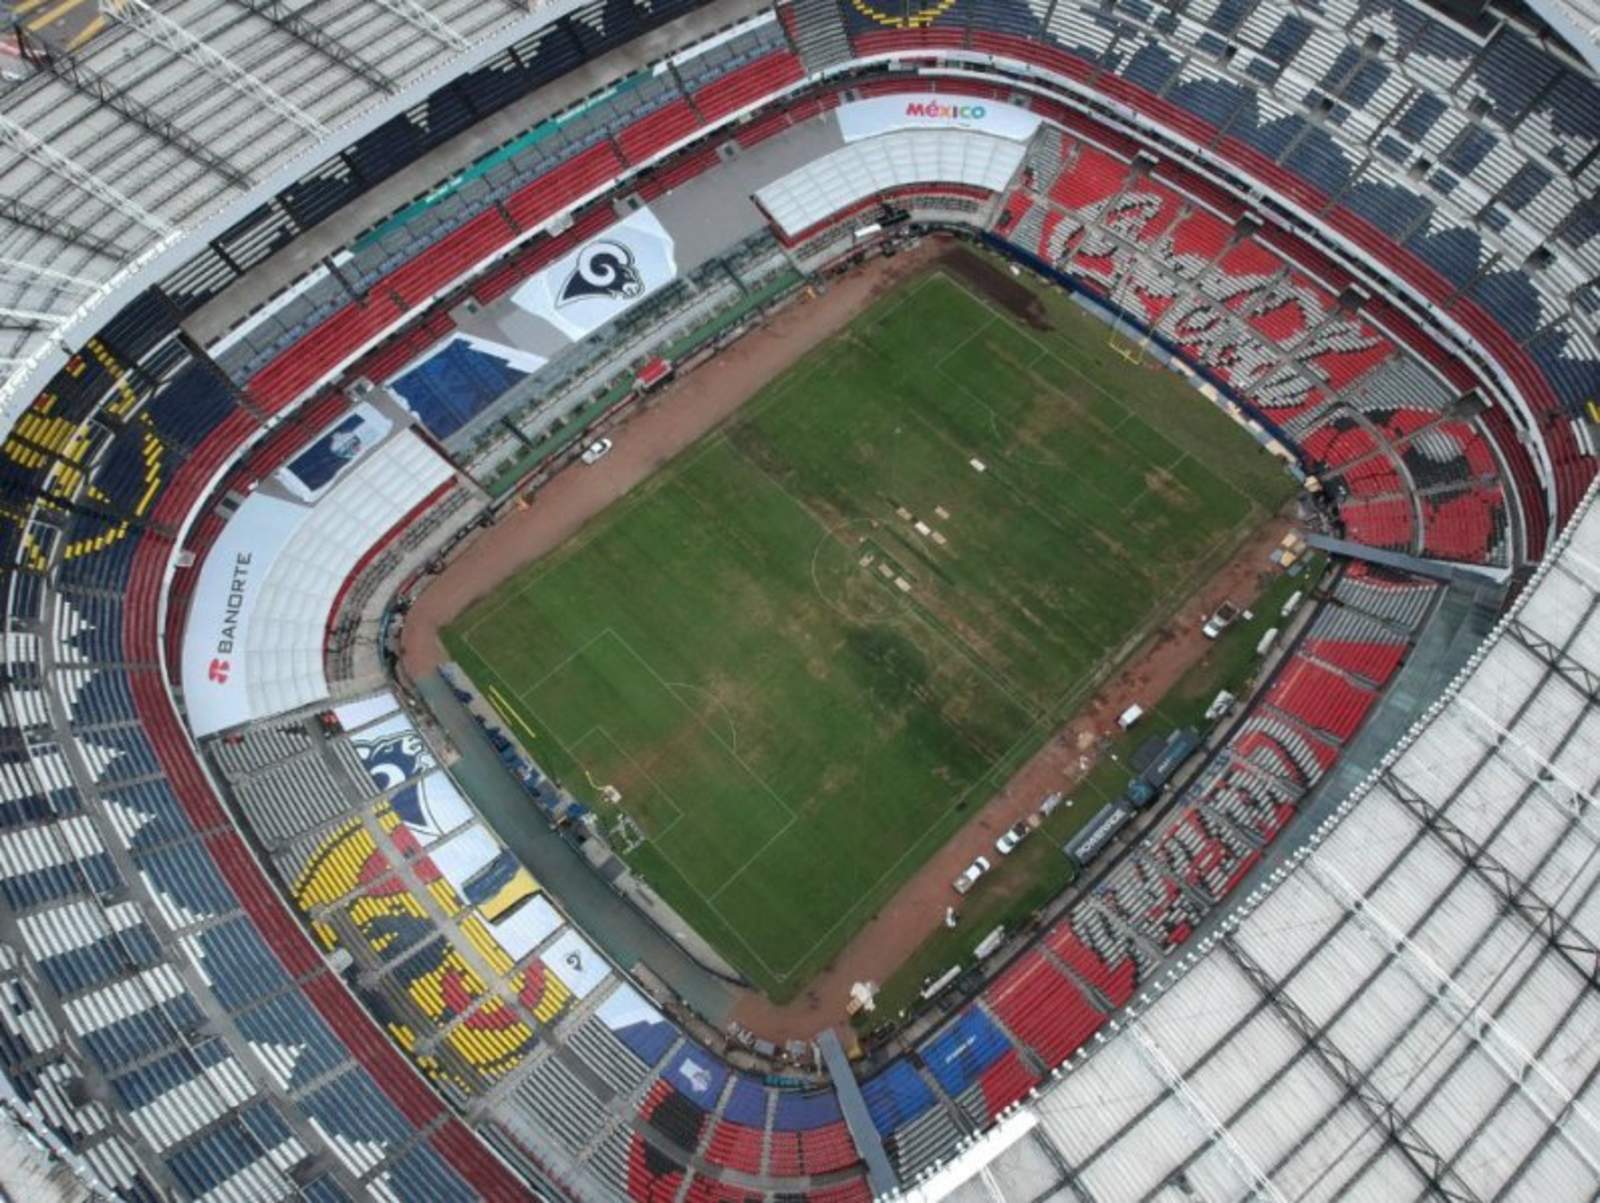 Según Raúl Barrios, exdirector de operaciones del Estadio Azteca, el inmueble 'no tiene una cancha para poder recibir partidos de liguilla y menos cuando va a tener actividad sábado y domingo', por lo que recomendó mudar los partidos a otra cancha. (ARCHIVO)